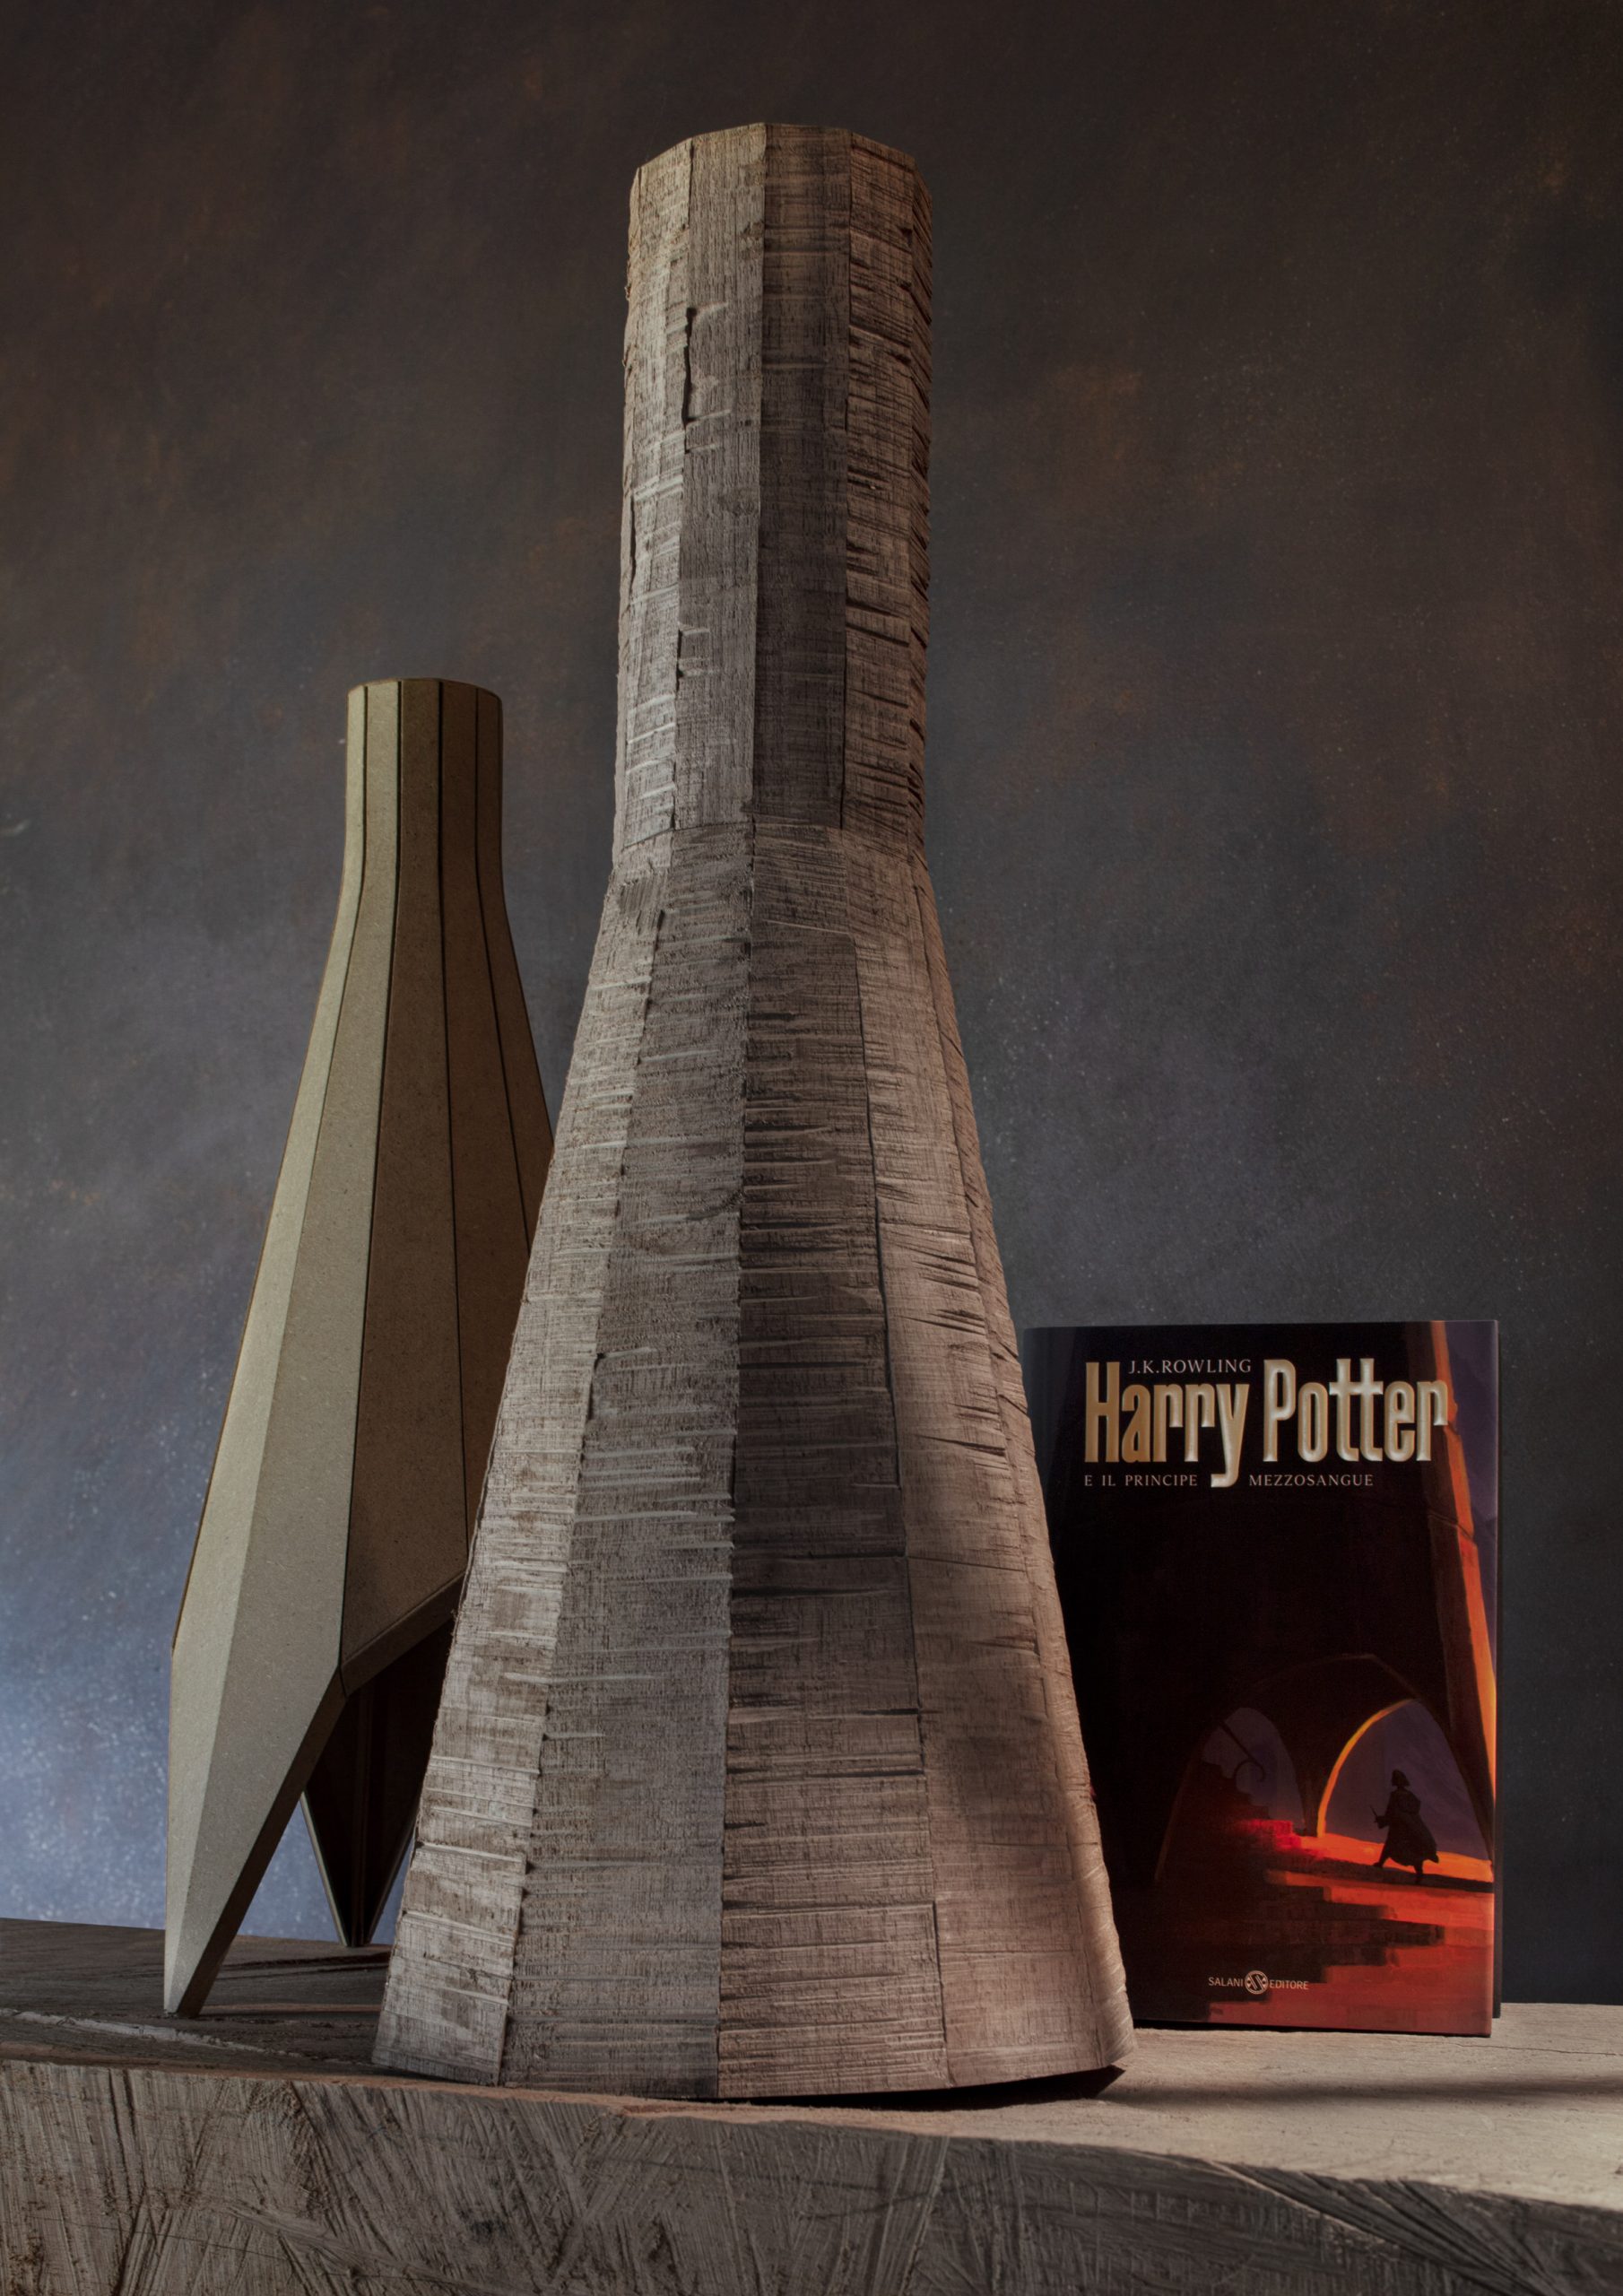 Arquiteto reimagina Harry Potter com arquitetura contemporânea